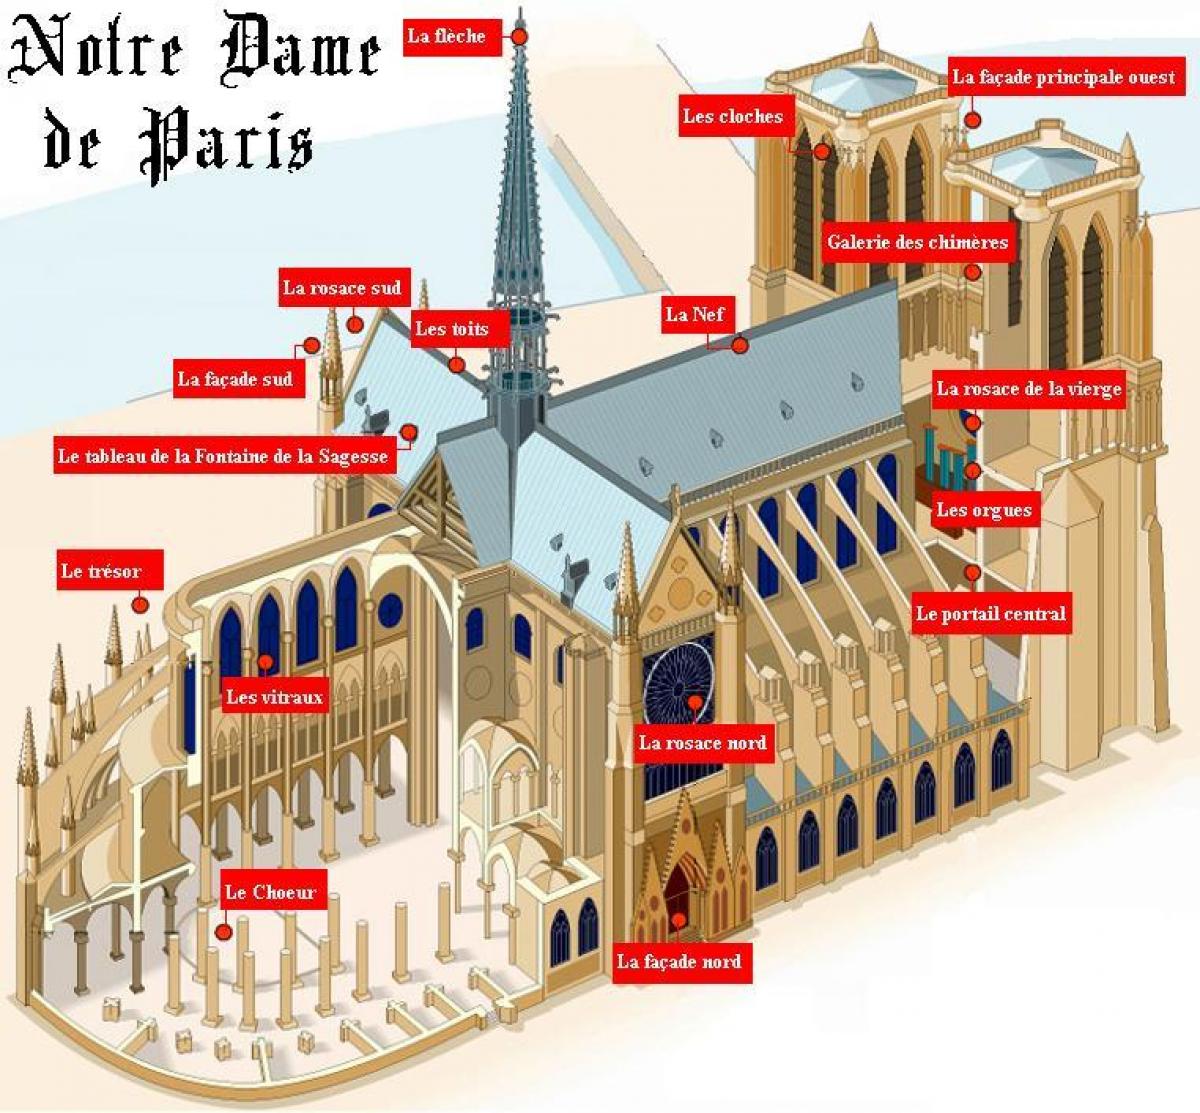 Notre Dame de Paris haritası